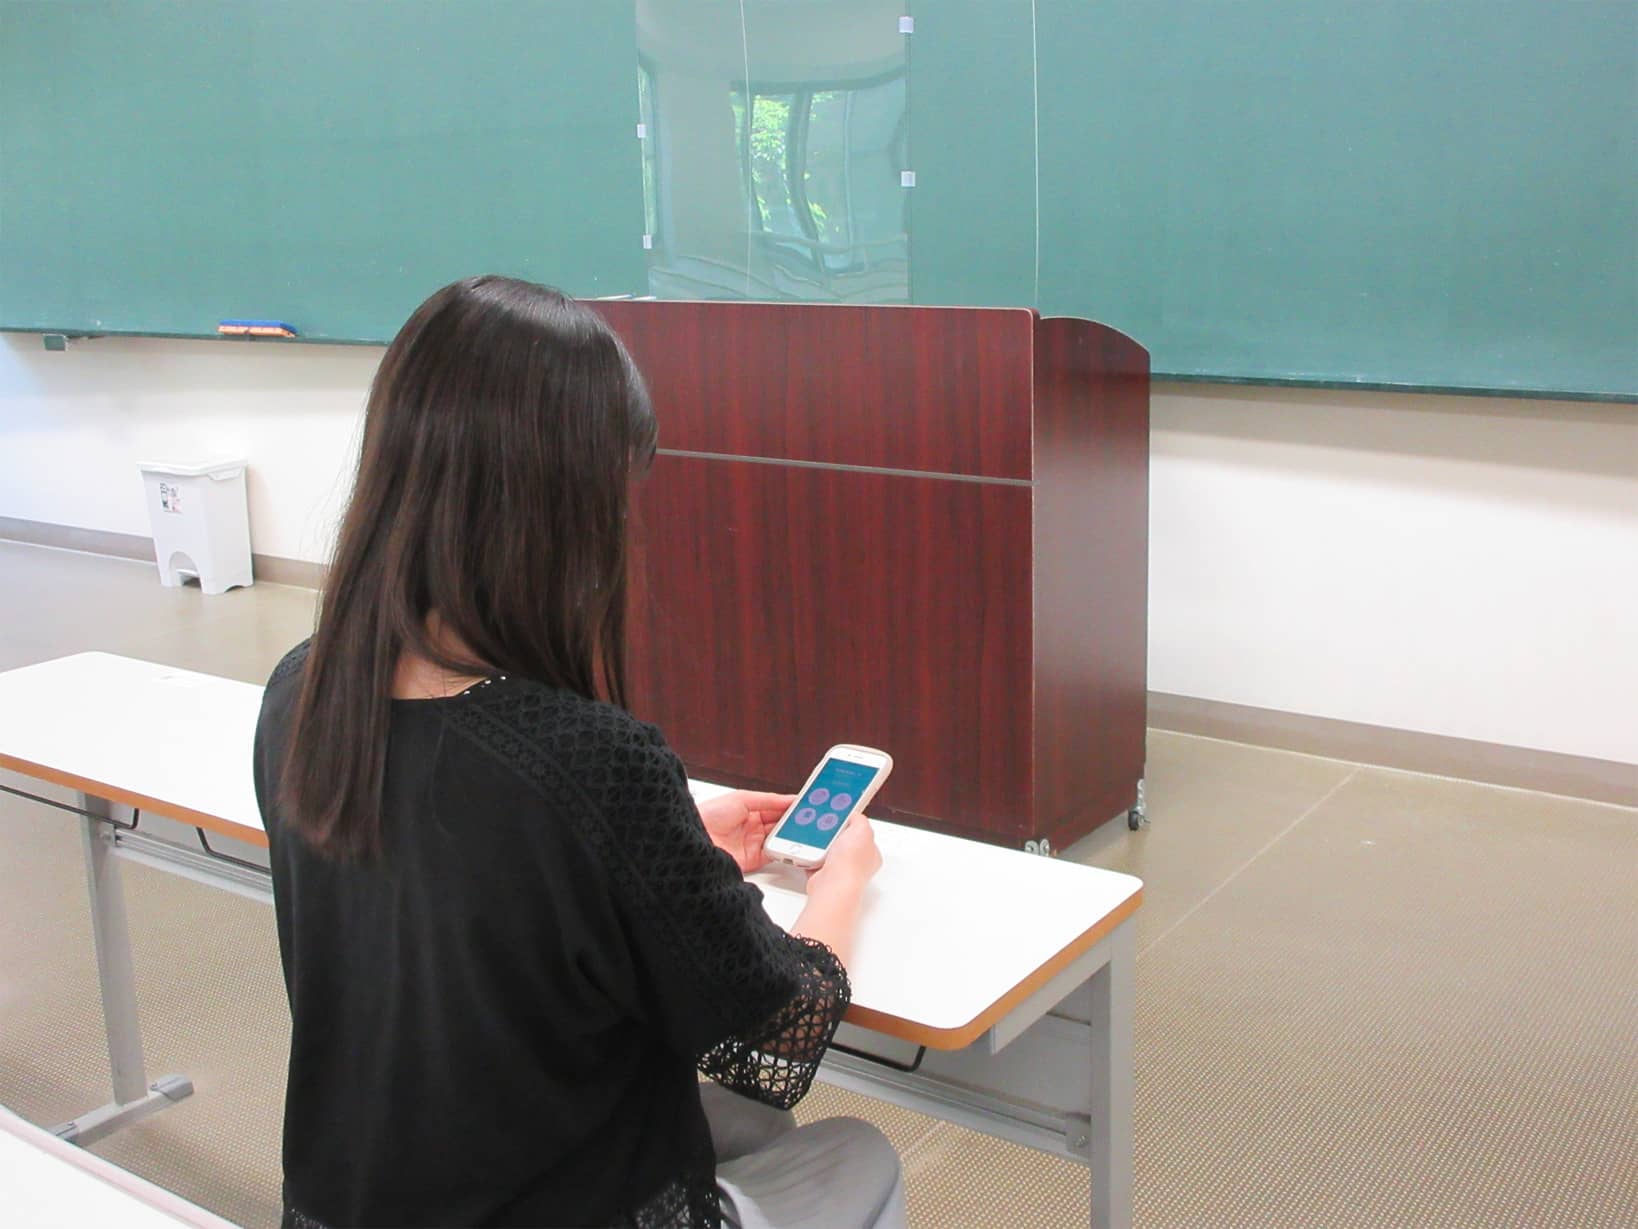 Mamoru Bizアプリを利用している学生の写真